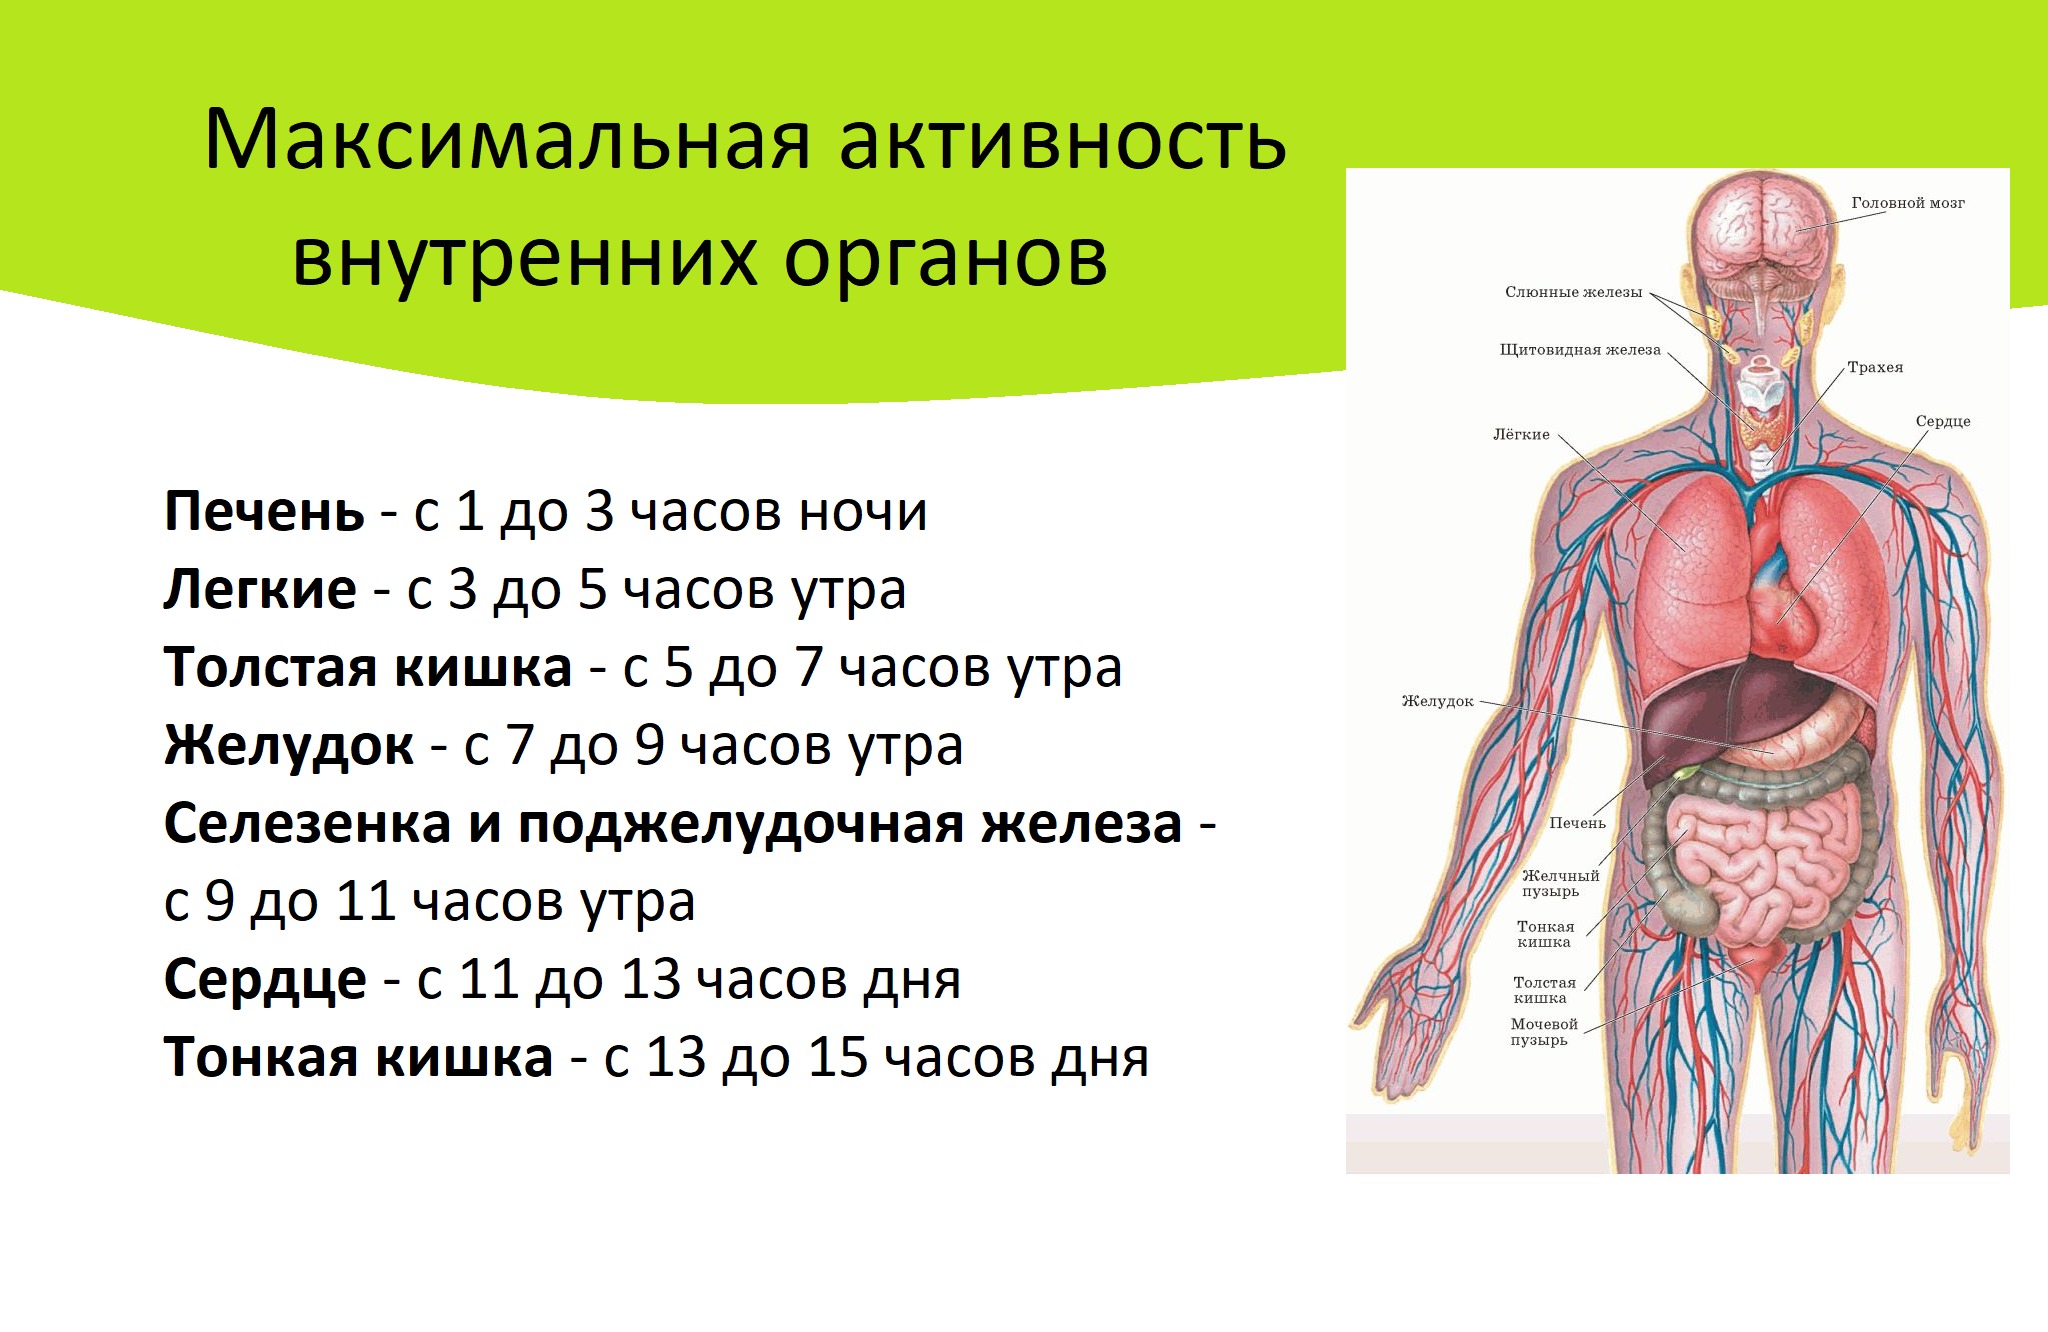 Сколько органов. Количество органов у человека. Активность внутренних органов. Активность внутренних органов человека. Скольокоргонов у человека.